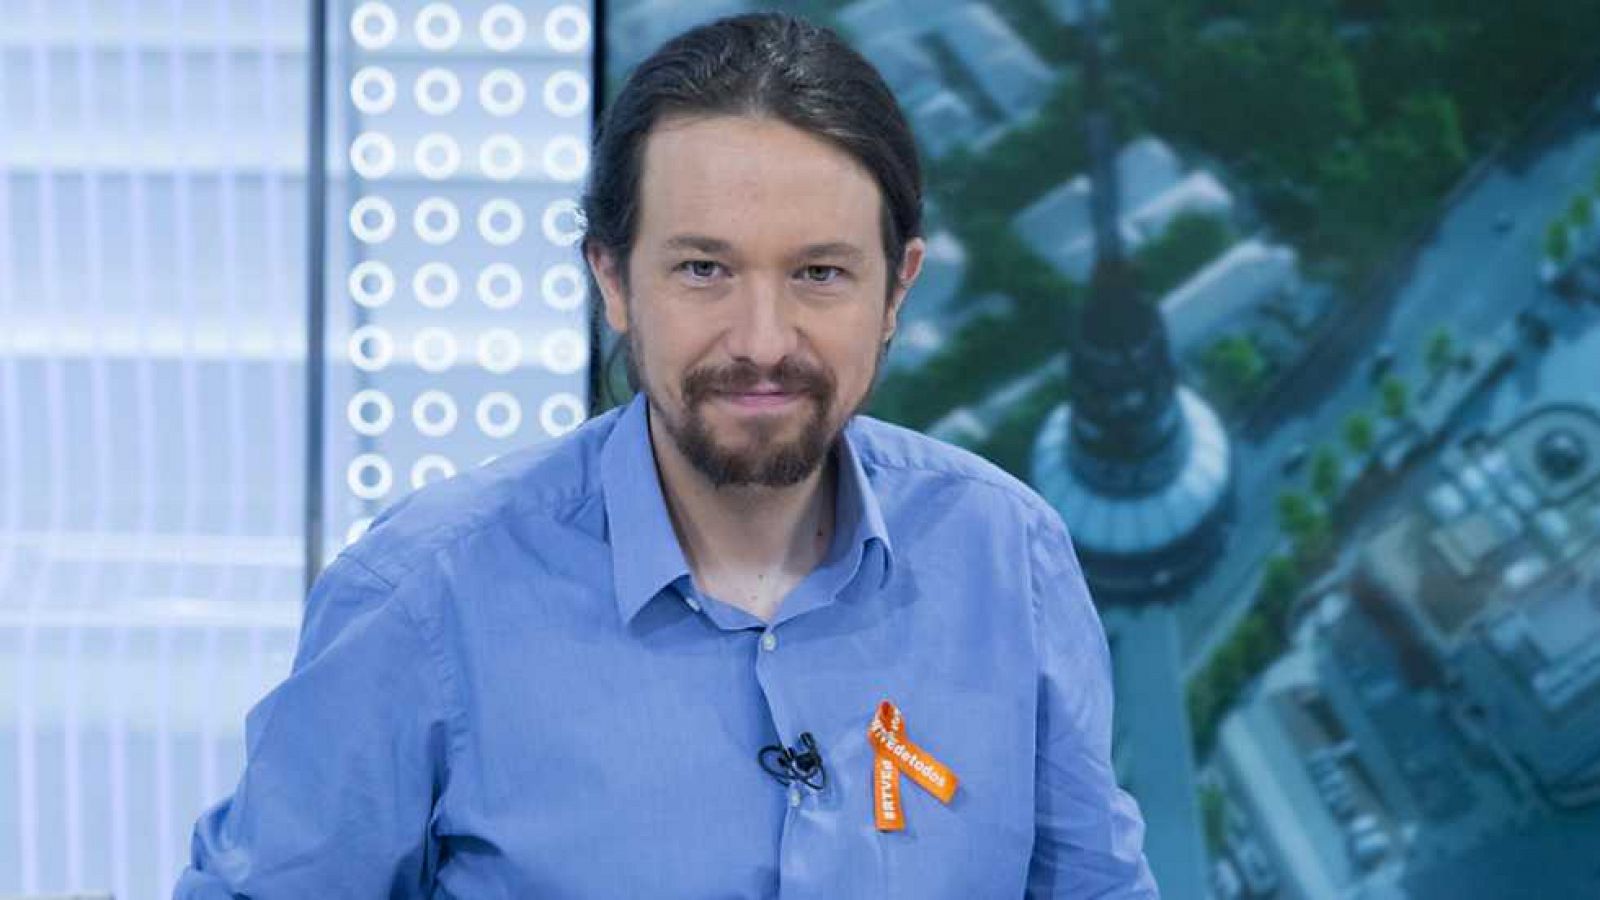 Los desayunos de TVE - Pablo Iglesias, secretario general de Podemos